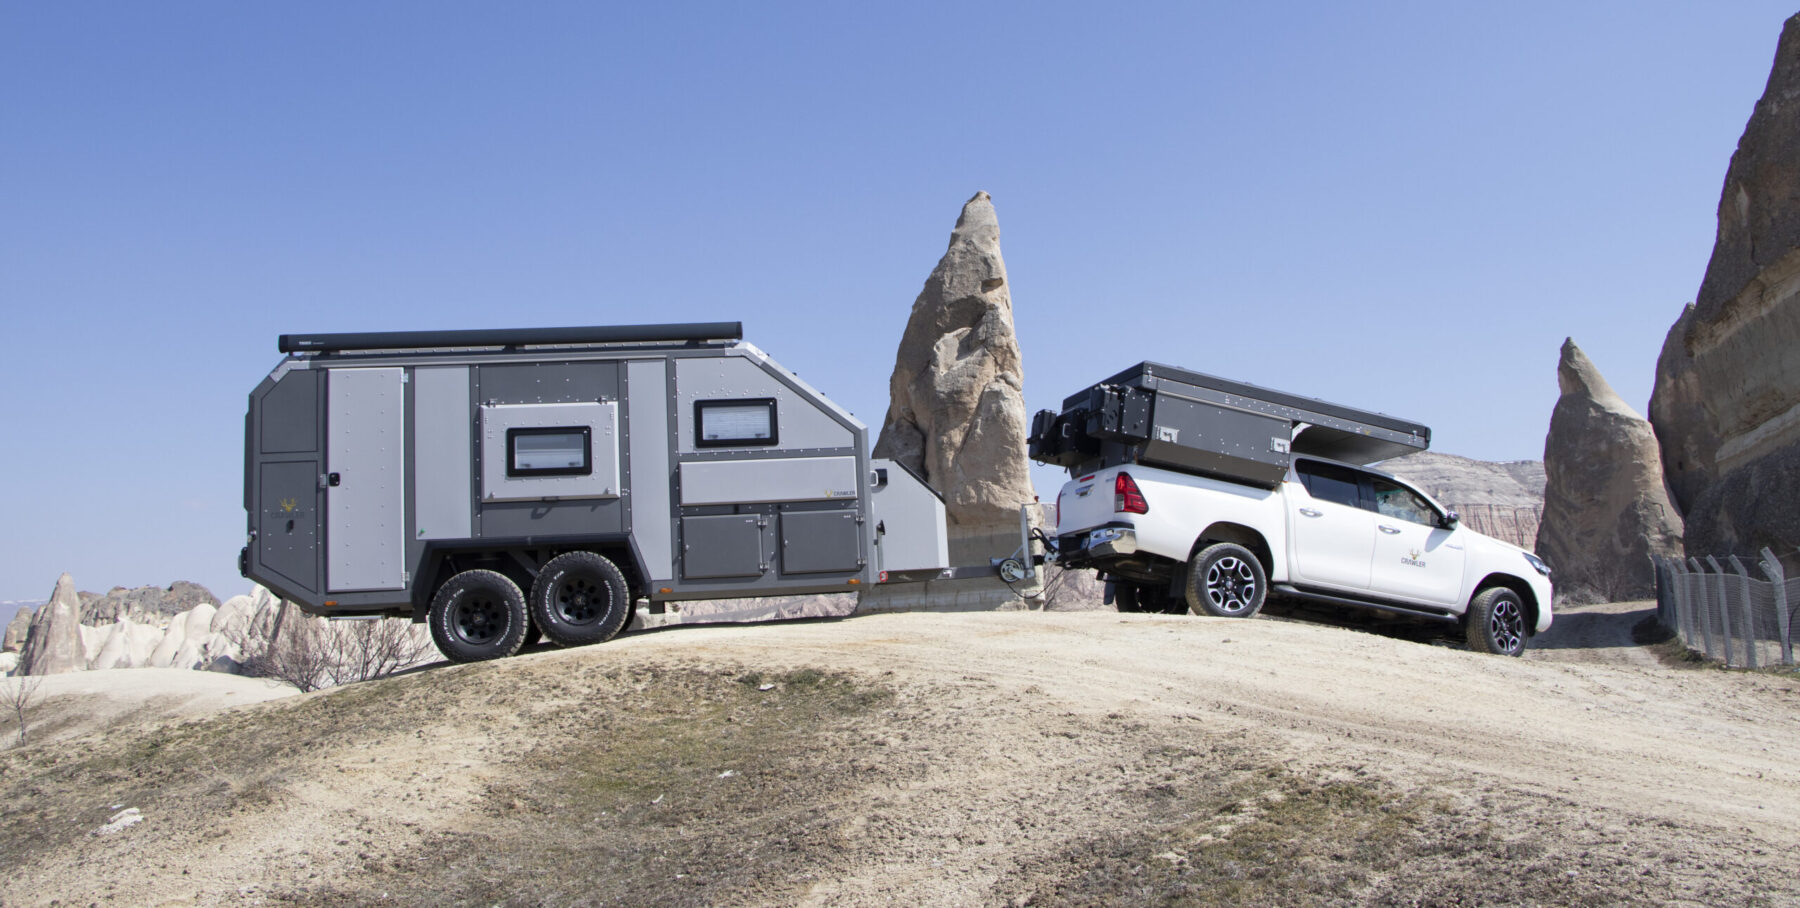 Toyota Tacoma mit Crawler Wohnkabine CMP 190: Pickup-Camping